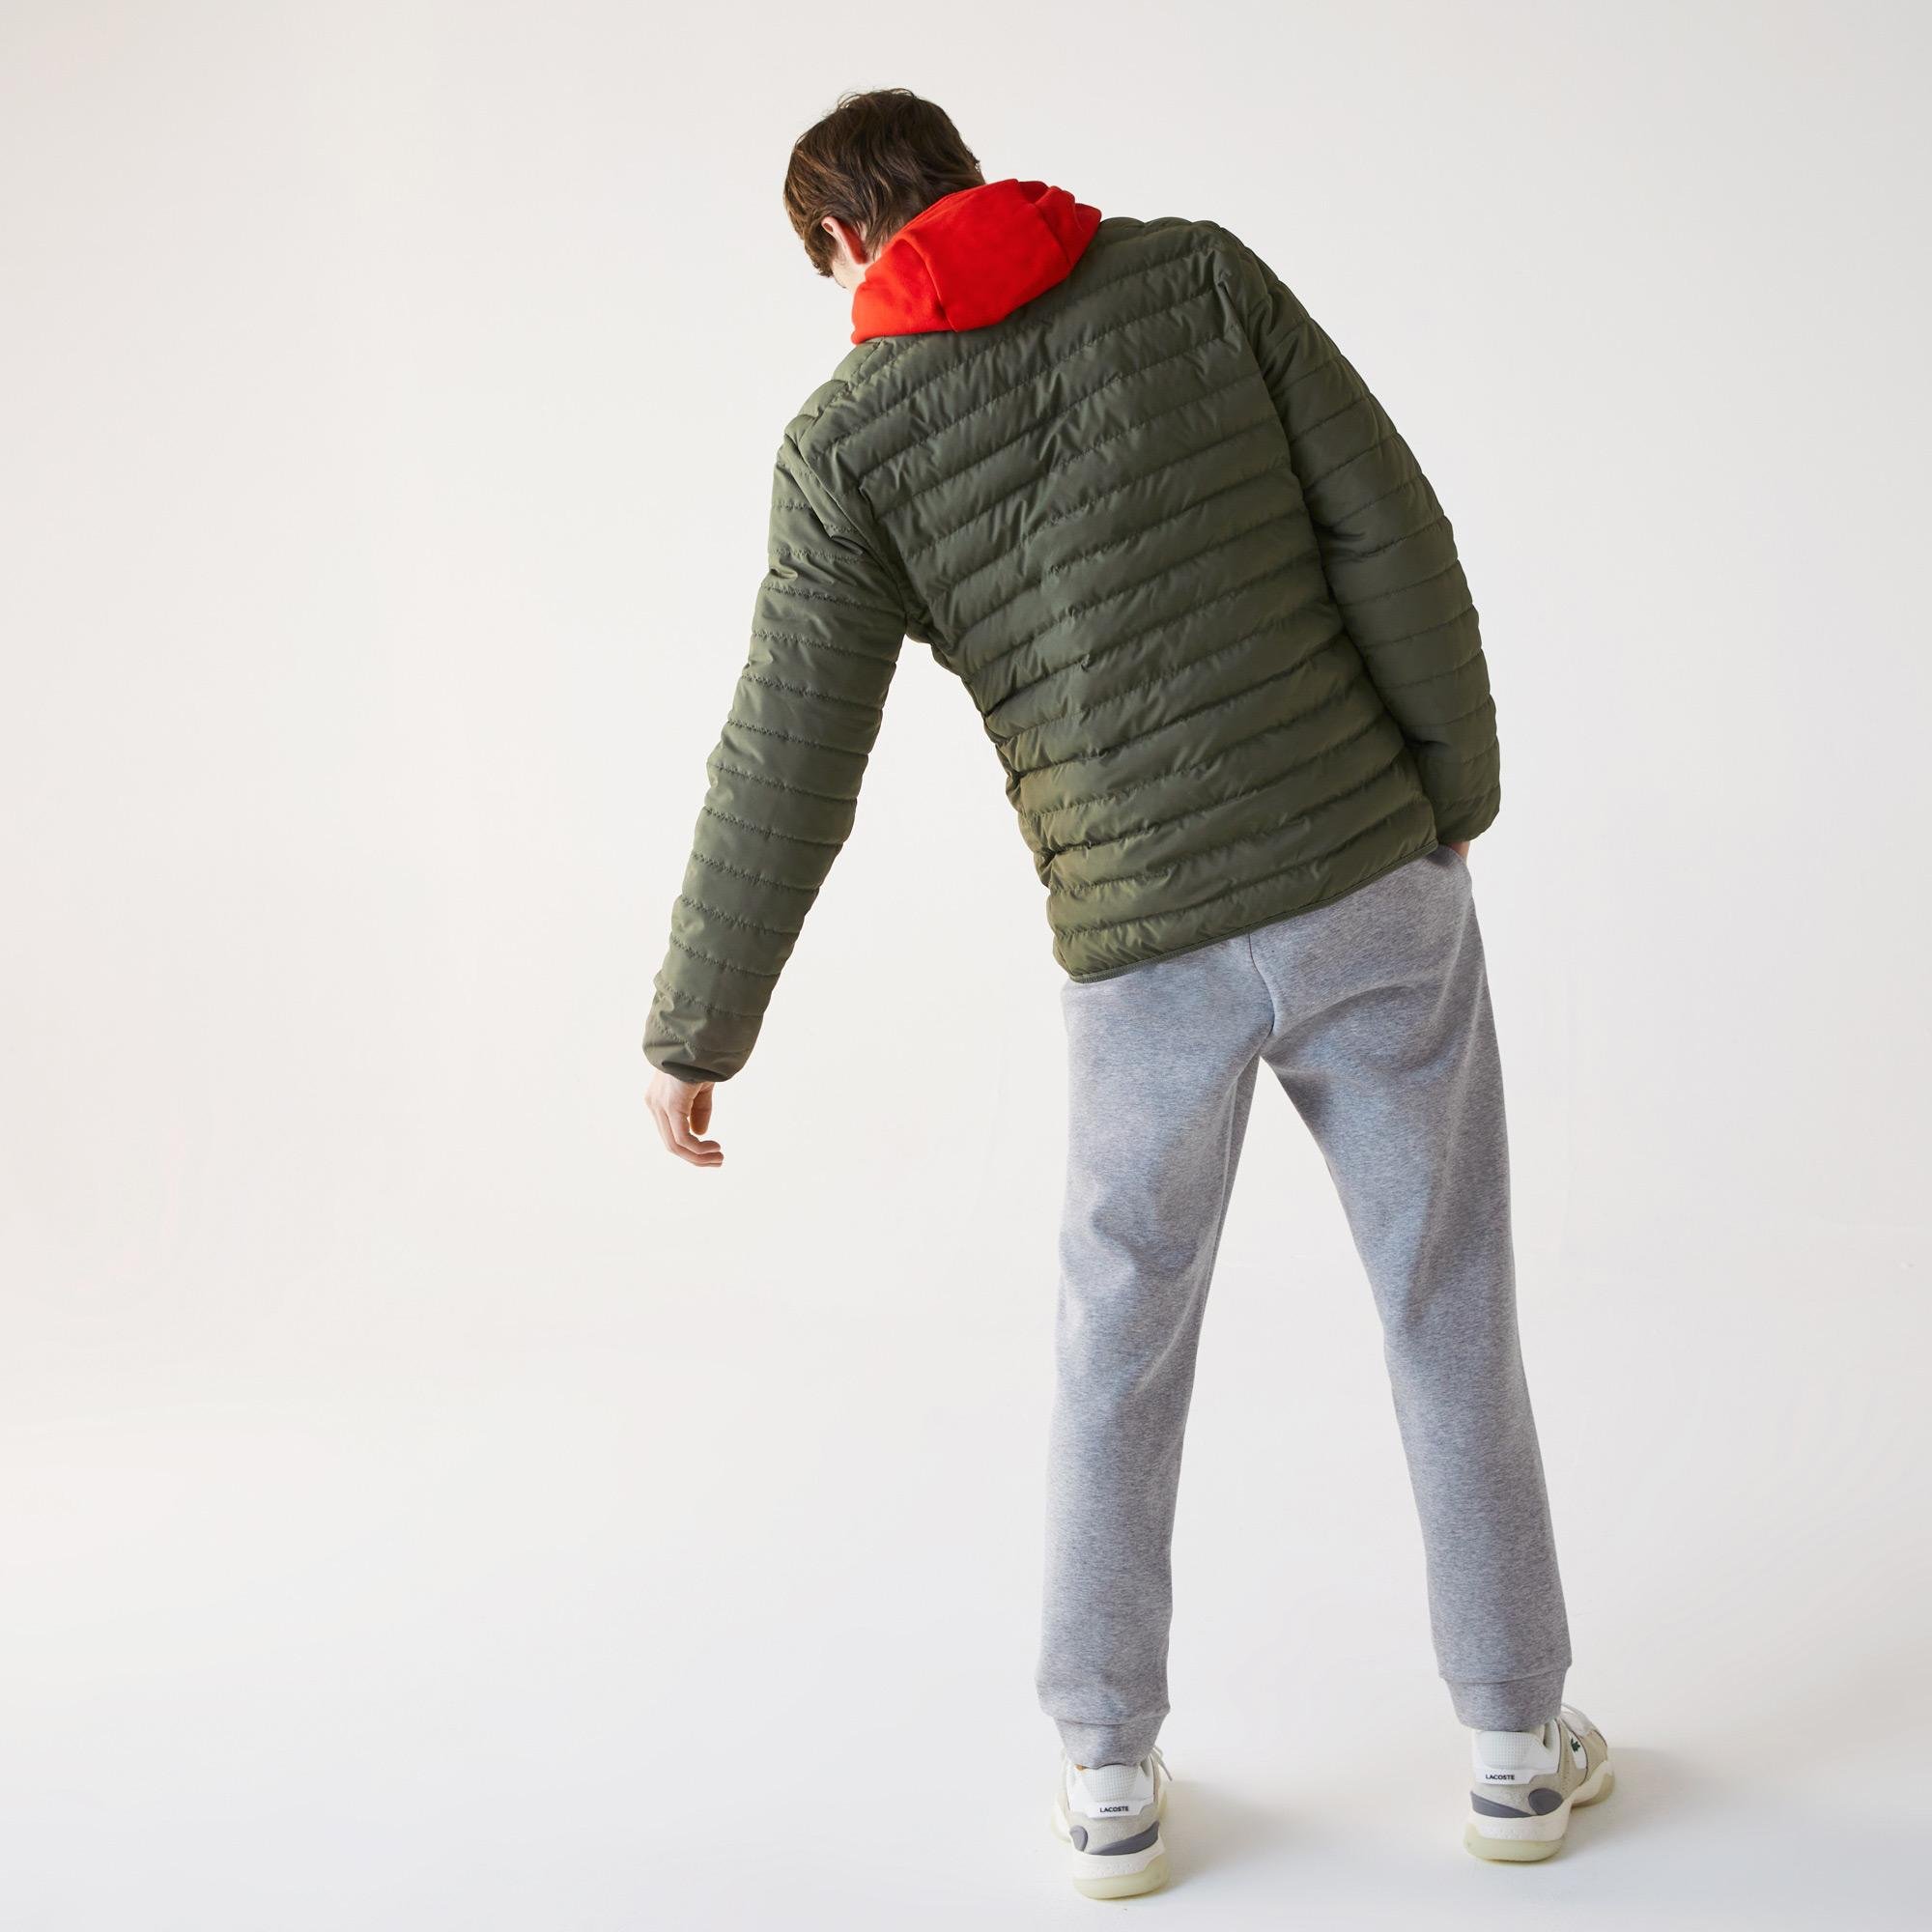 Lacoste Men?s Lightweight Water-Resistant Quilted Zip Jacket